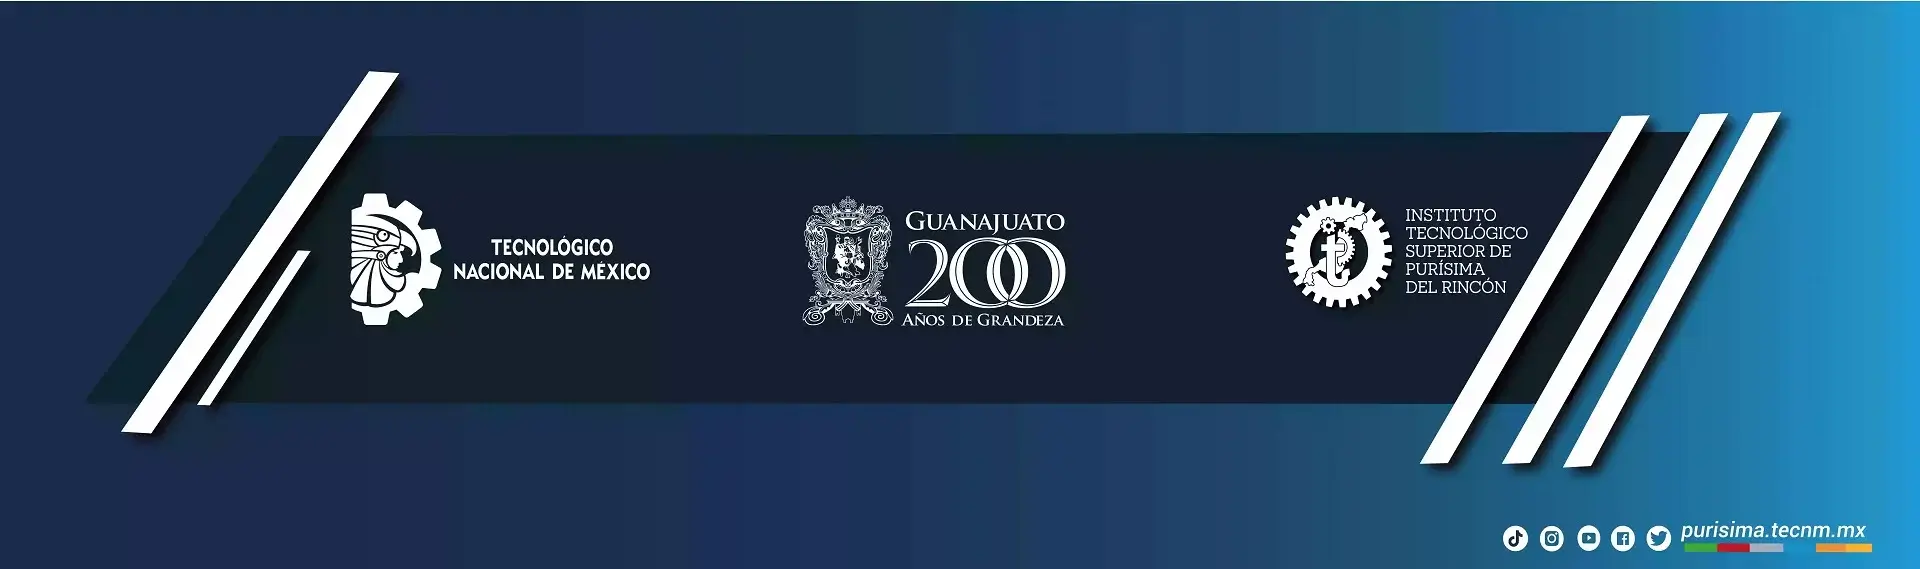 Guanajuato 200 años